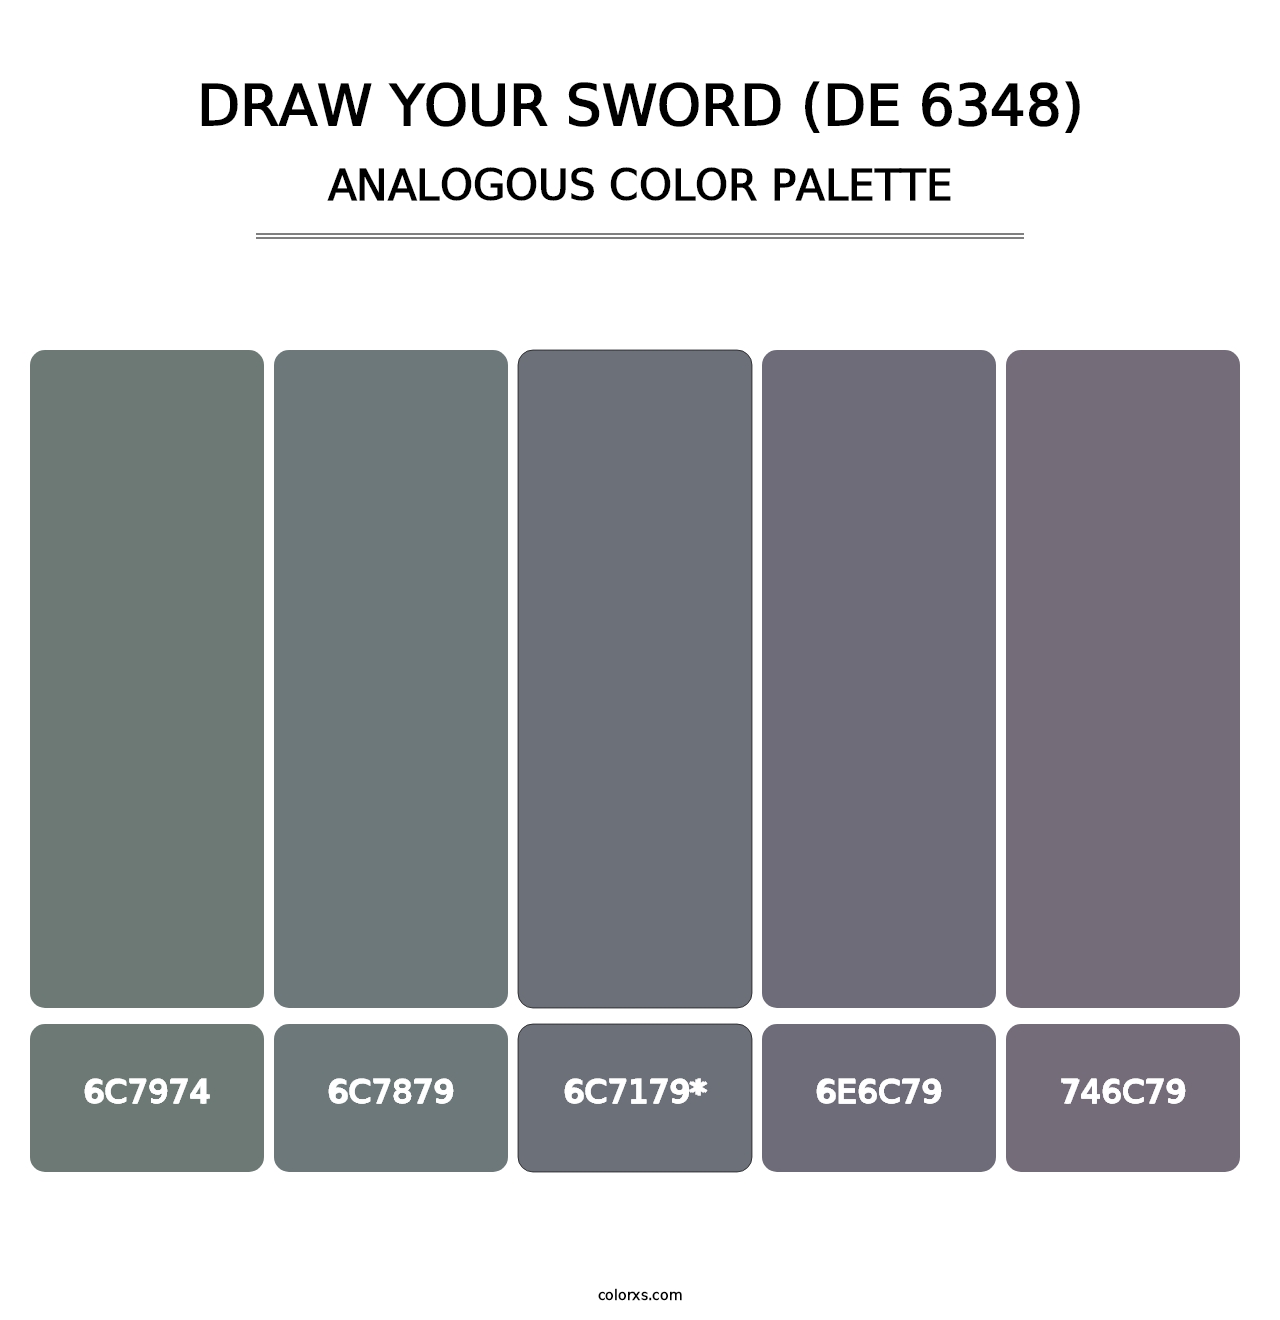 Draw Your Sword (DE 6348) - Analogous Color Palette